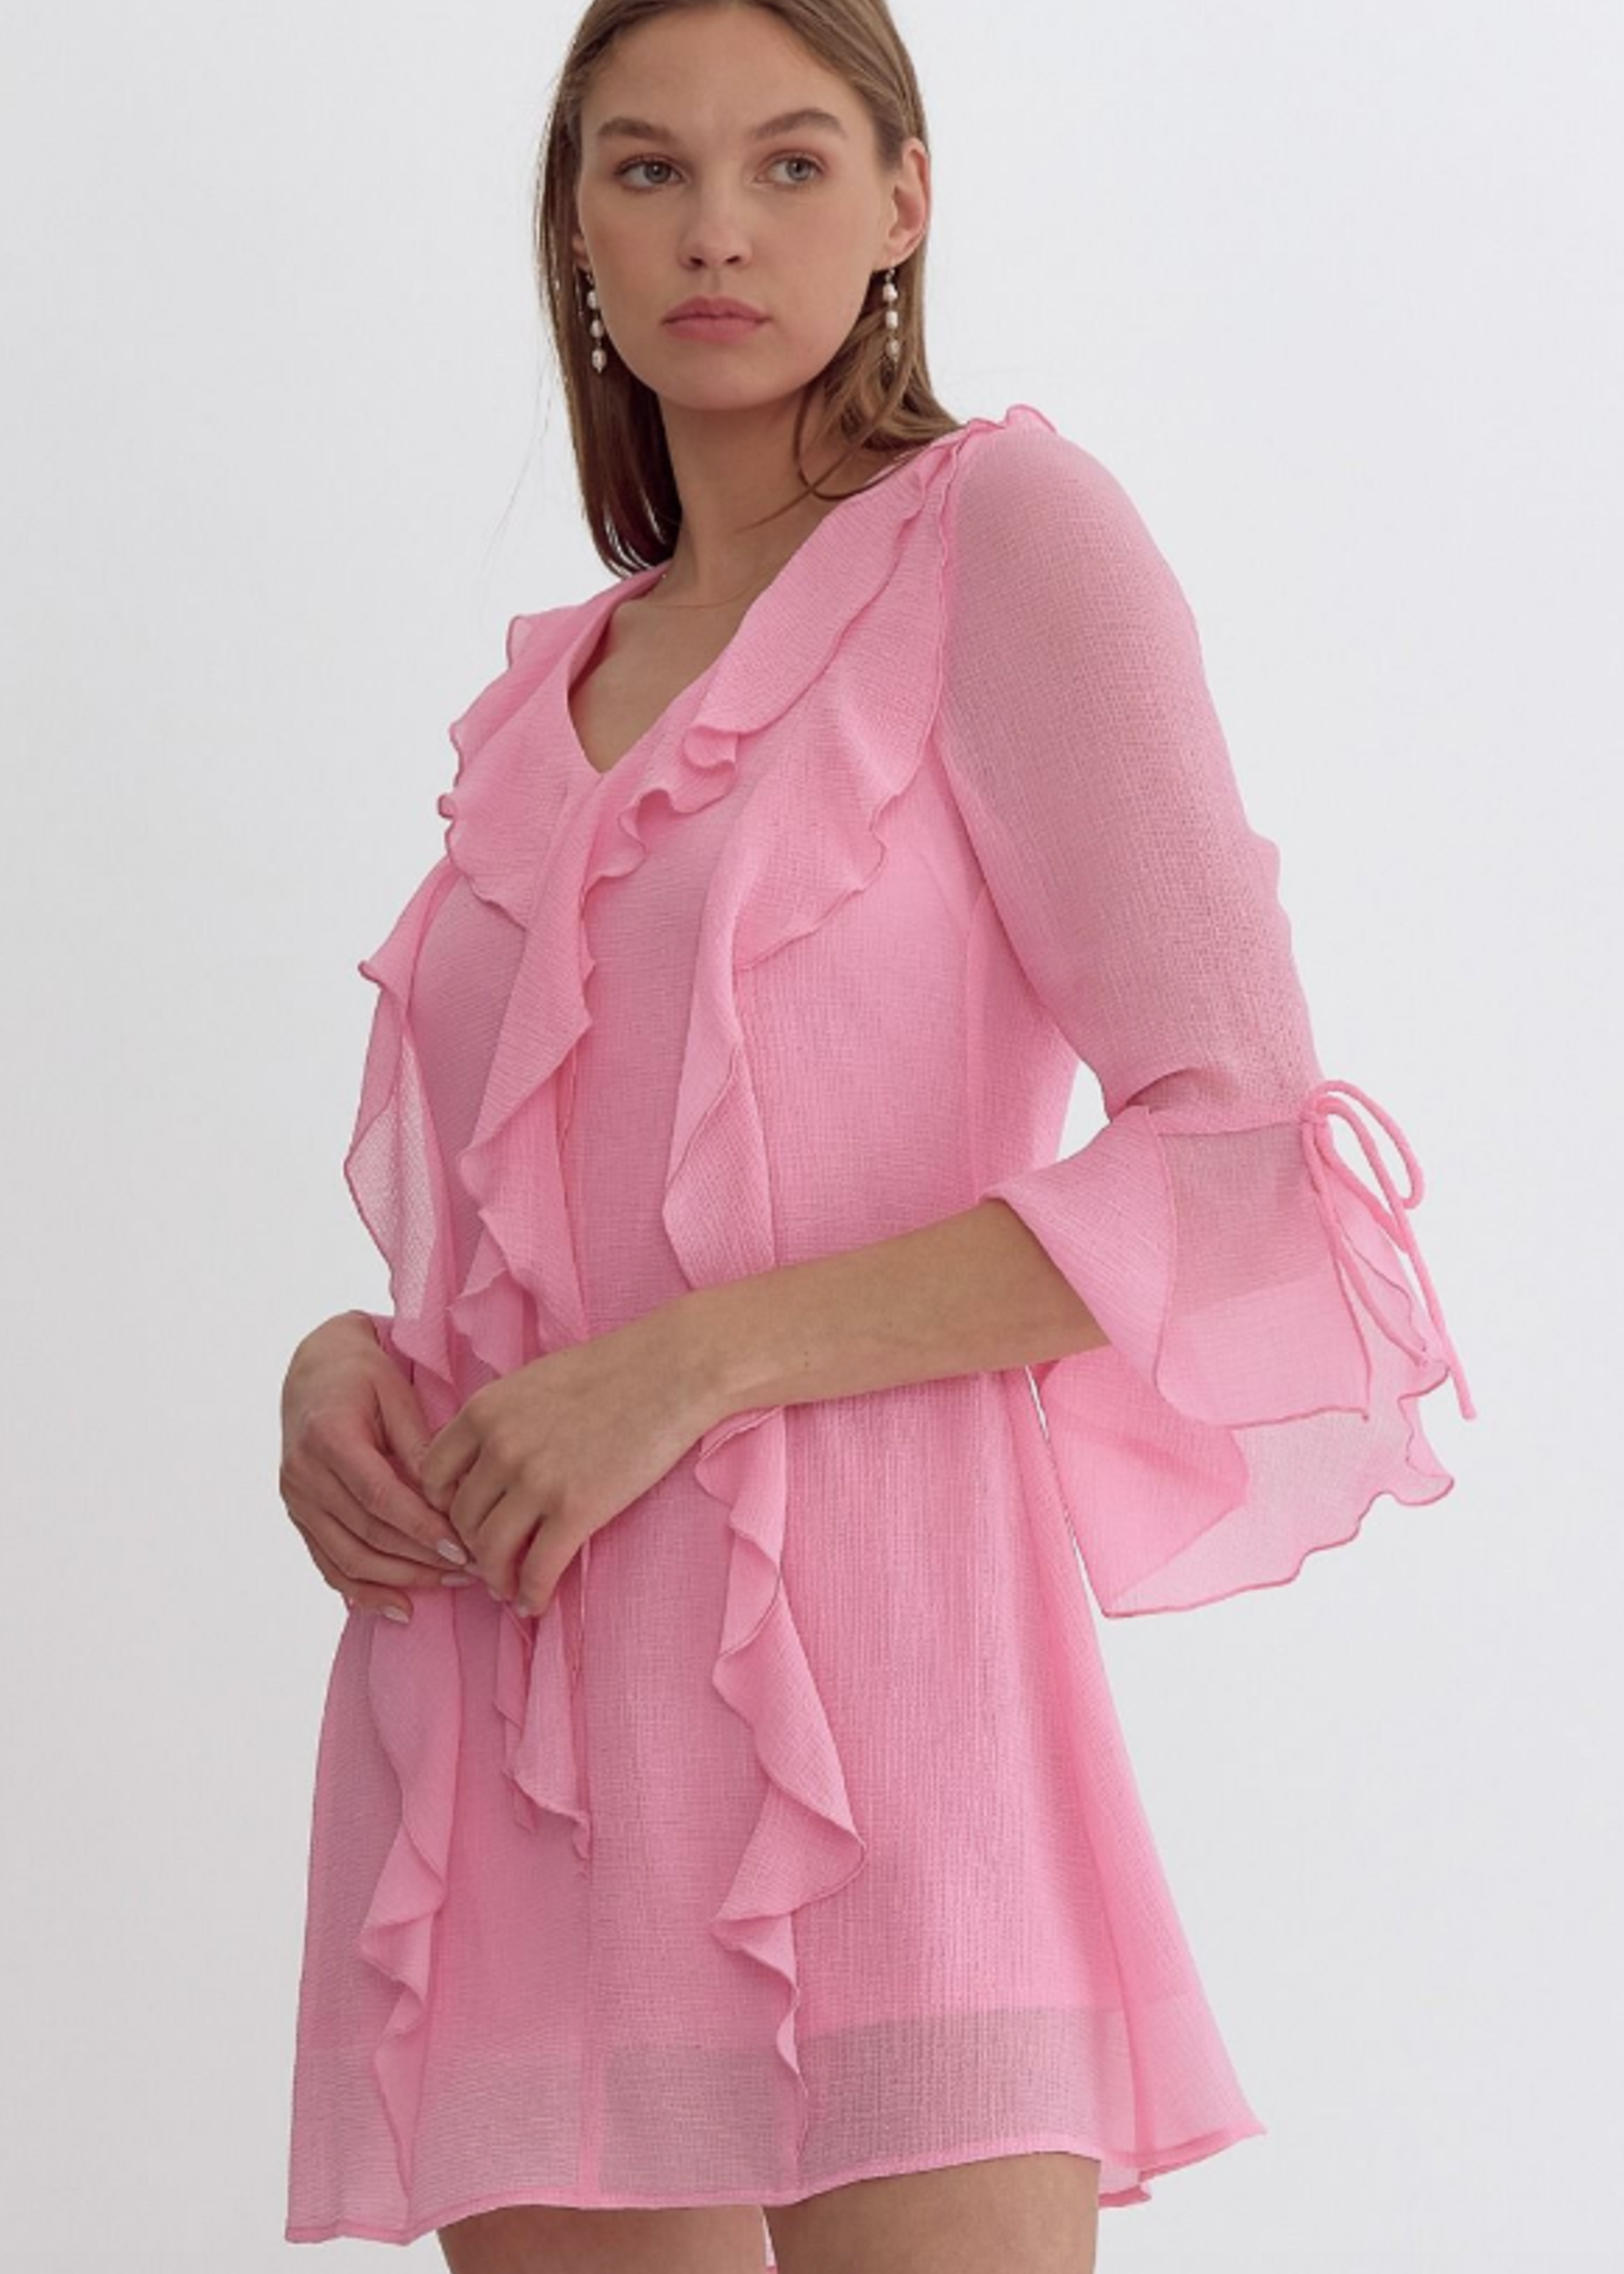 Pink About It Ruffle Dress